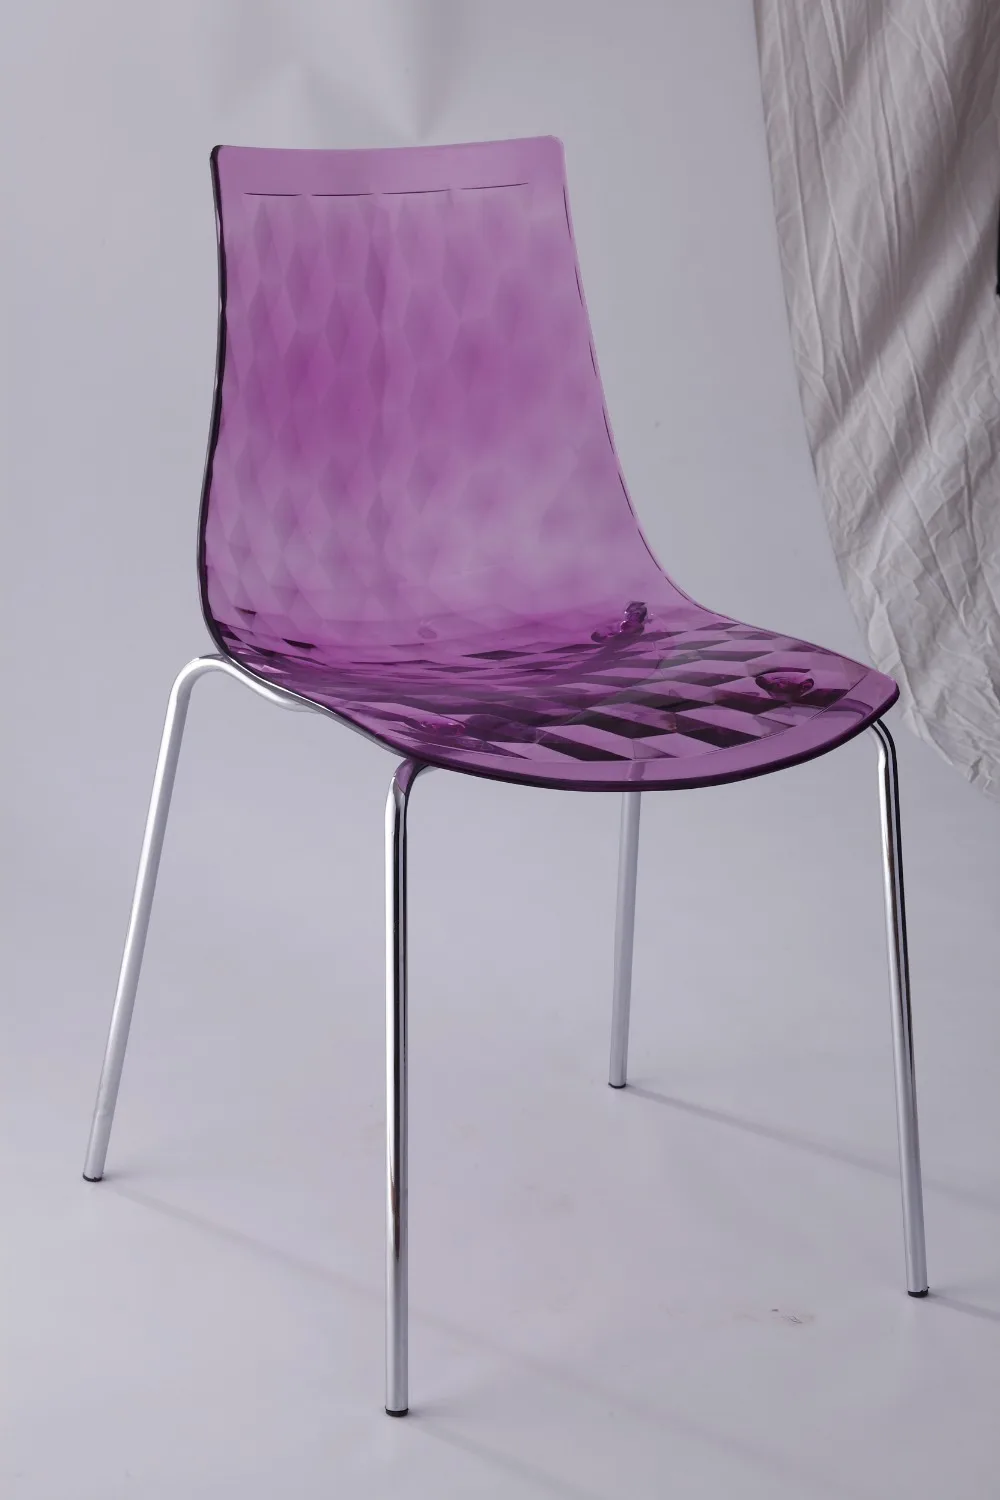 Минималистический современный дизайн, прозрачное сиденье, стальное металлическое основание для ног, обеденный стул со спинкой, популярный красивый прозрачный стул со стразами